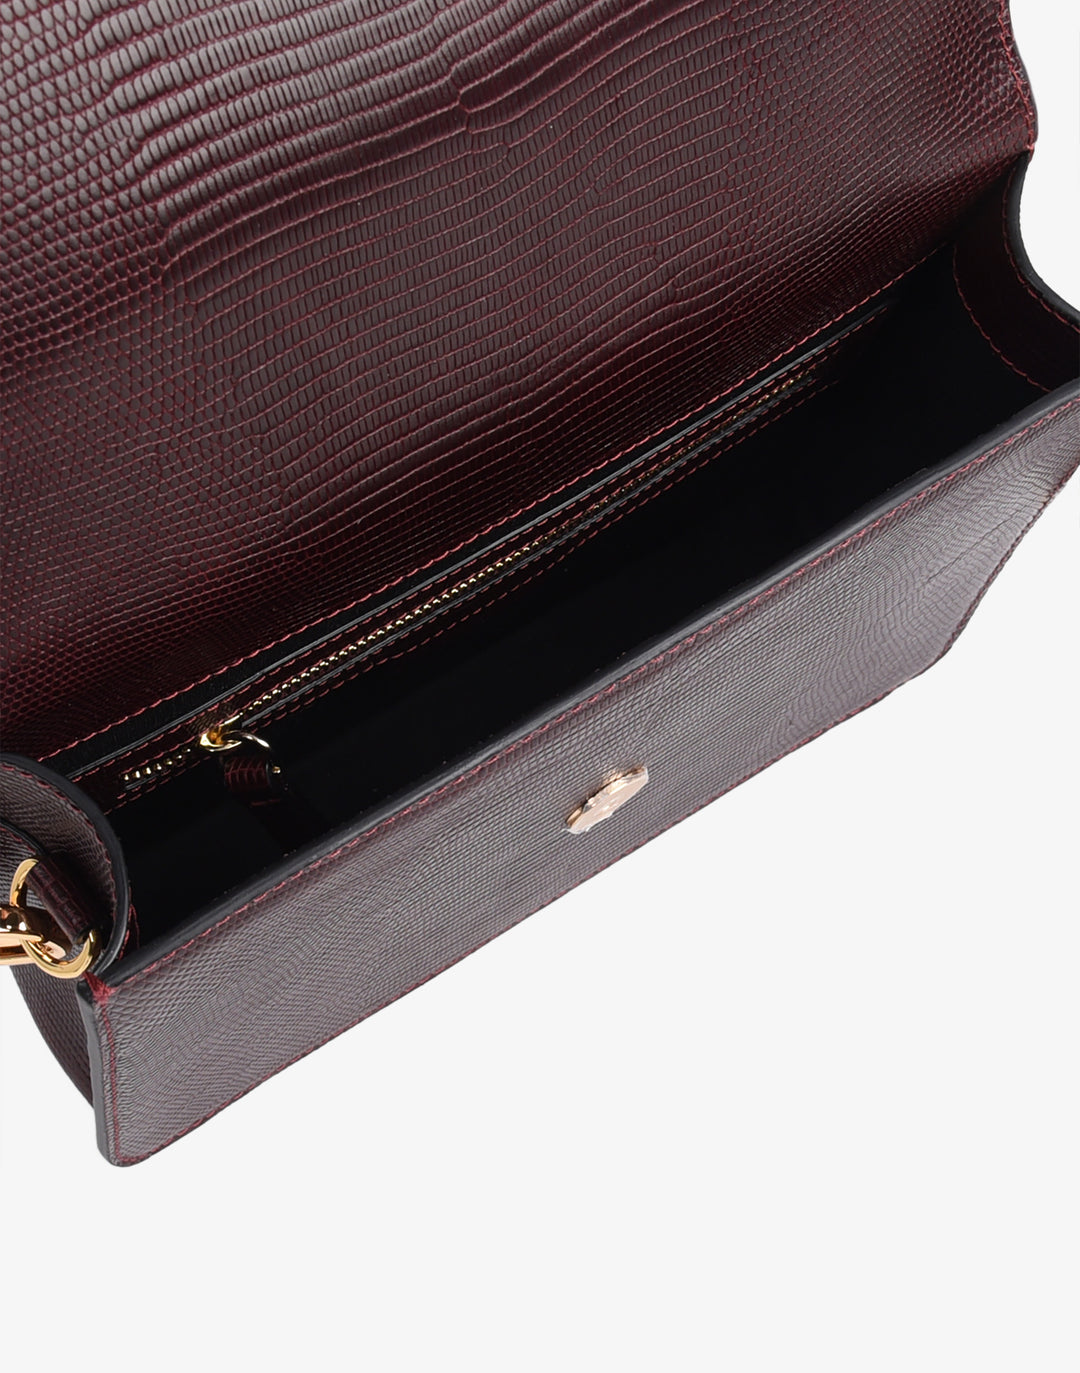 hobnob.luxury • Luxury handbag is all about details. • Threads